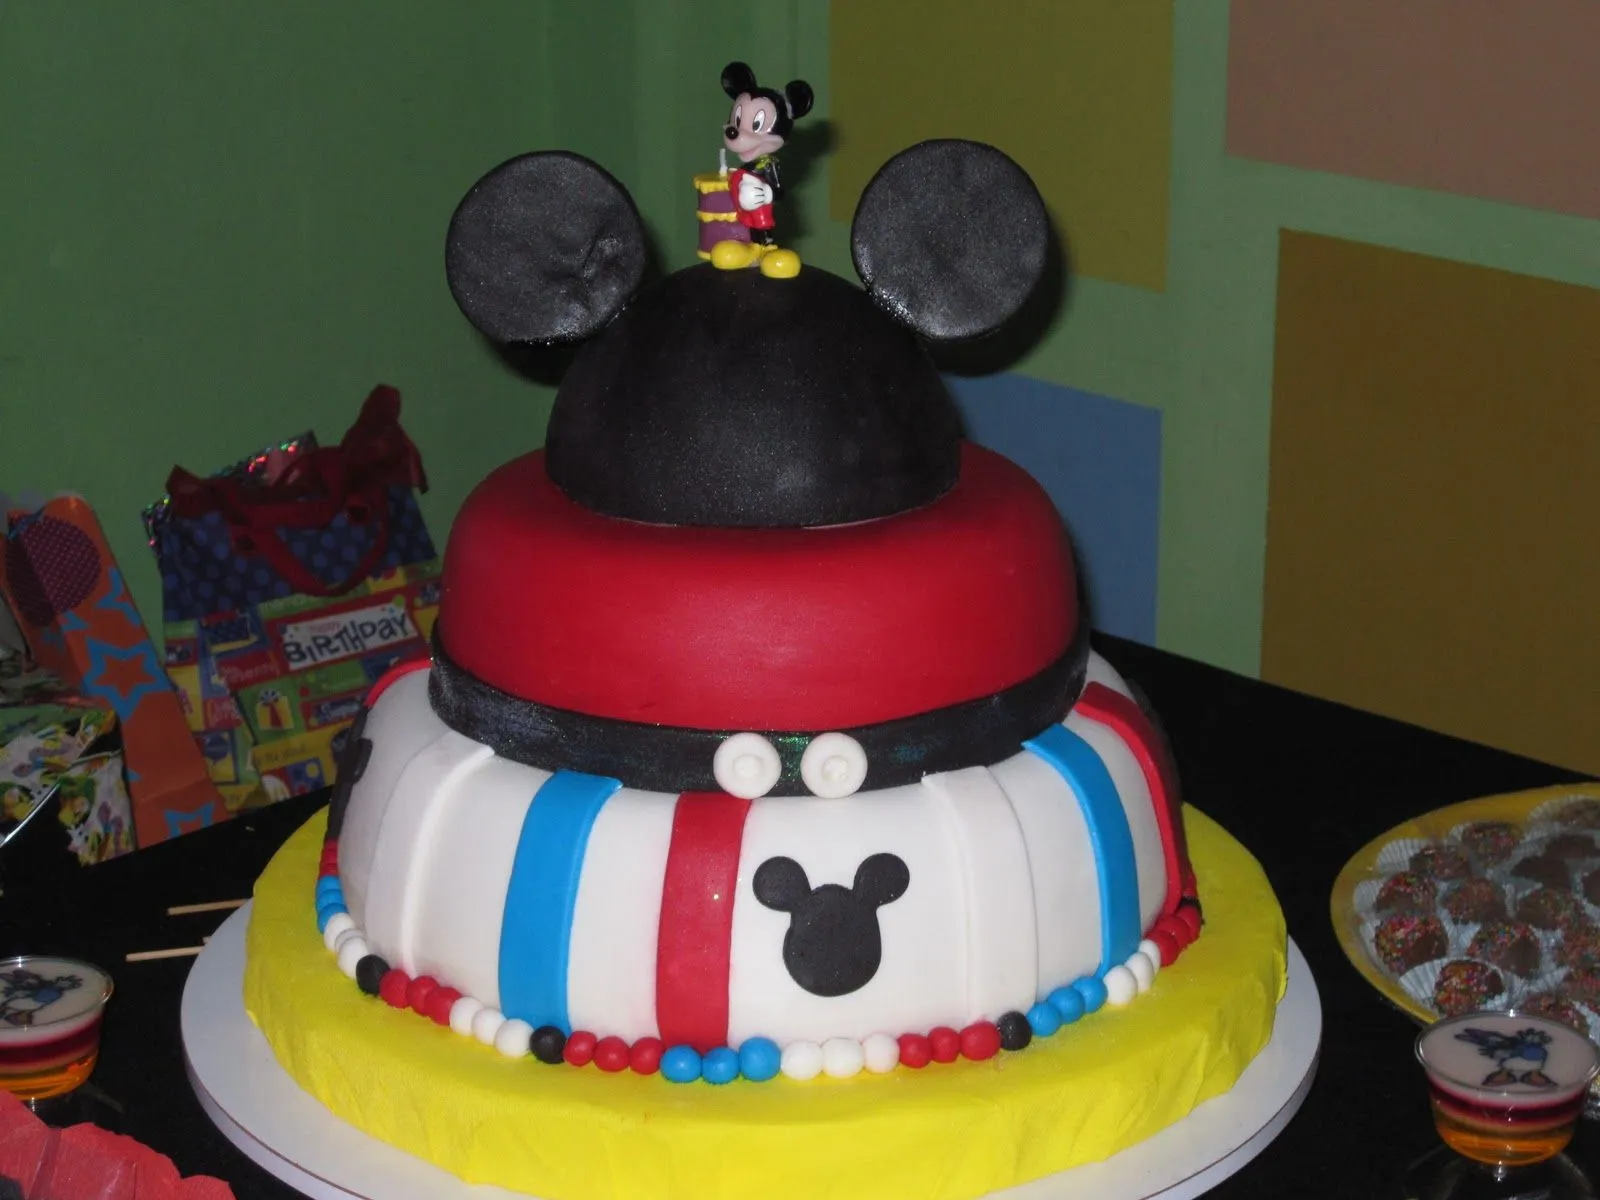 Torta, gelatina y minigelatinas de Mickey Mouse y sus amigos...